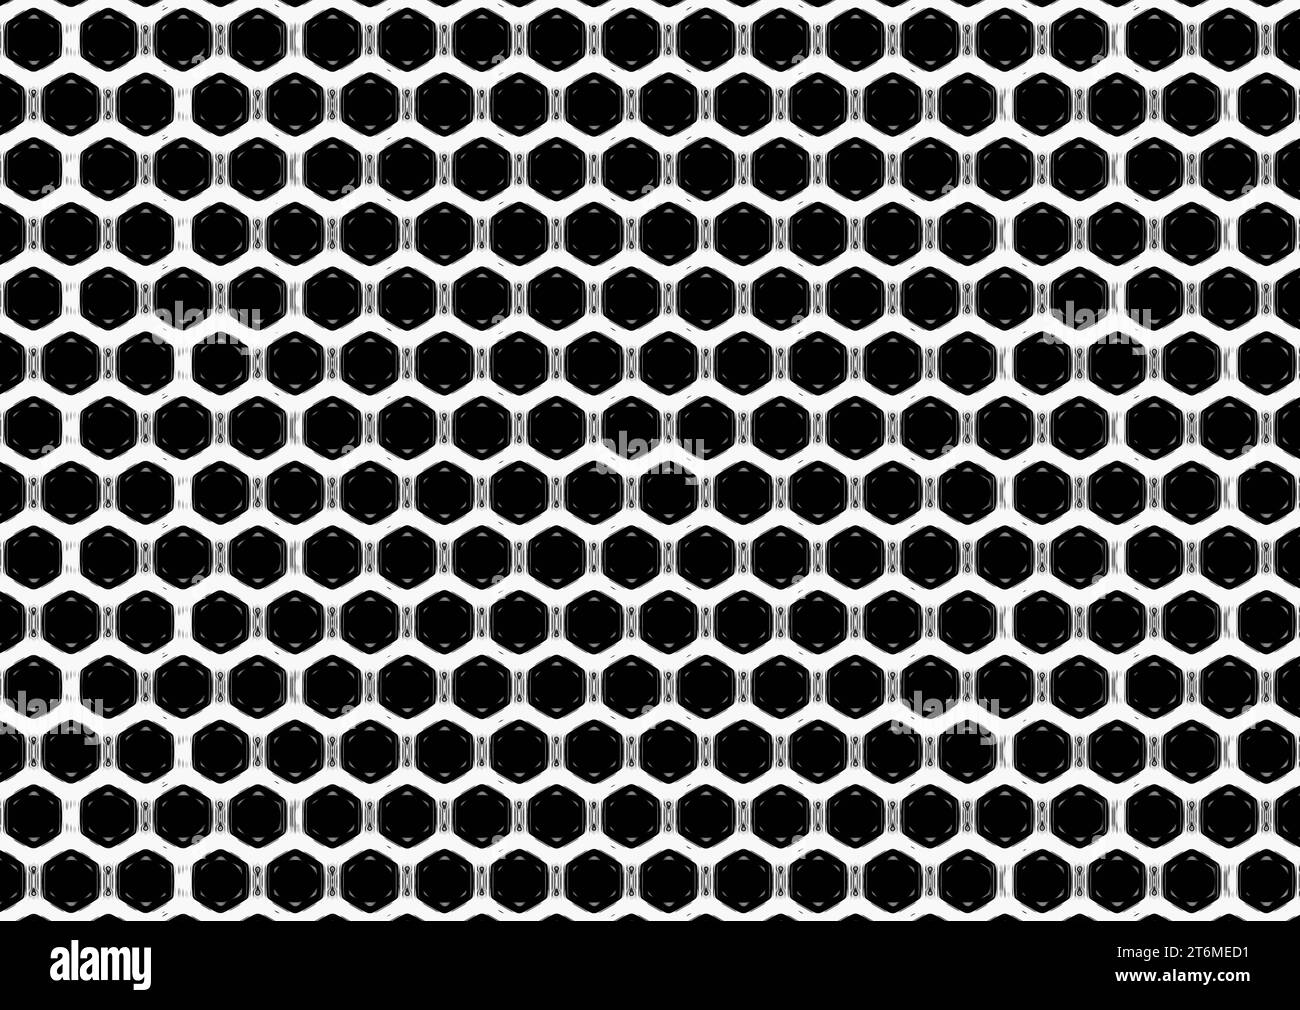 Weißer Hintergrund mit schwarzem sechseckigen Muster. Zellen mit dekorativem Motiv, getrennt durch eine Grenze mit humanoiden Figuren. Stockfoto